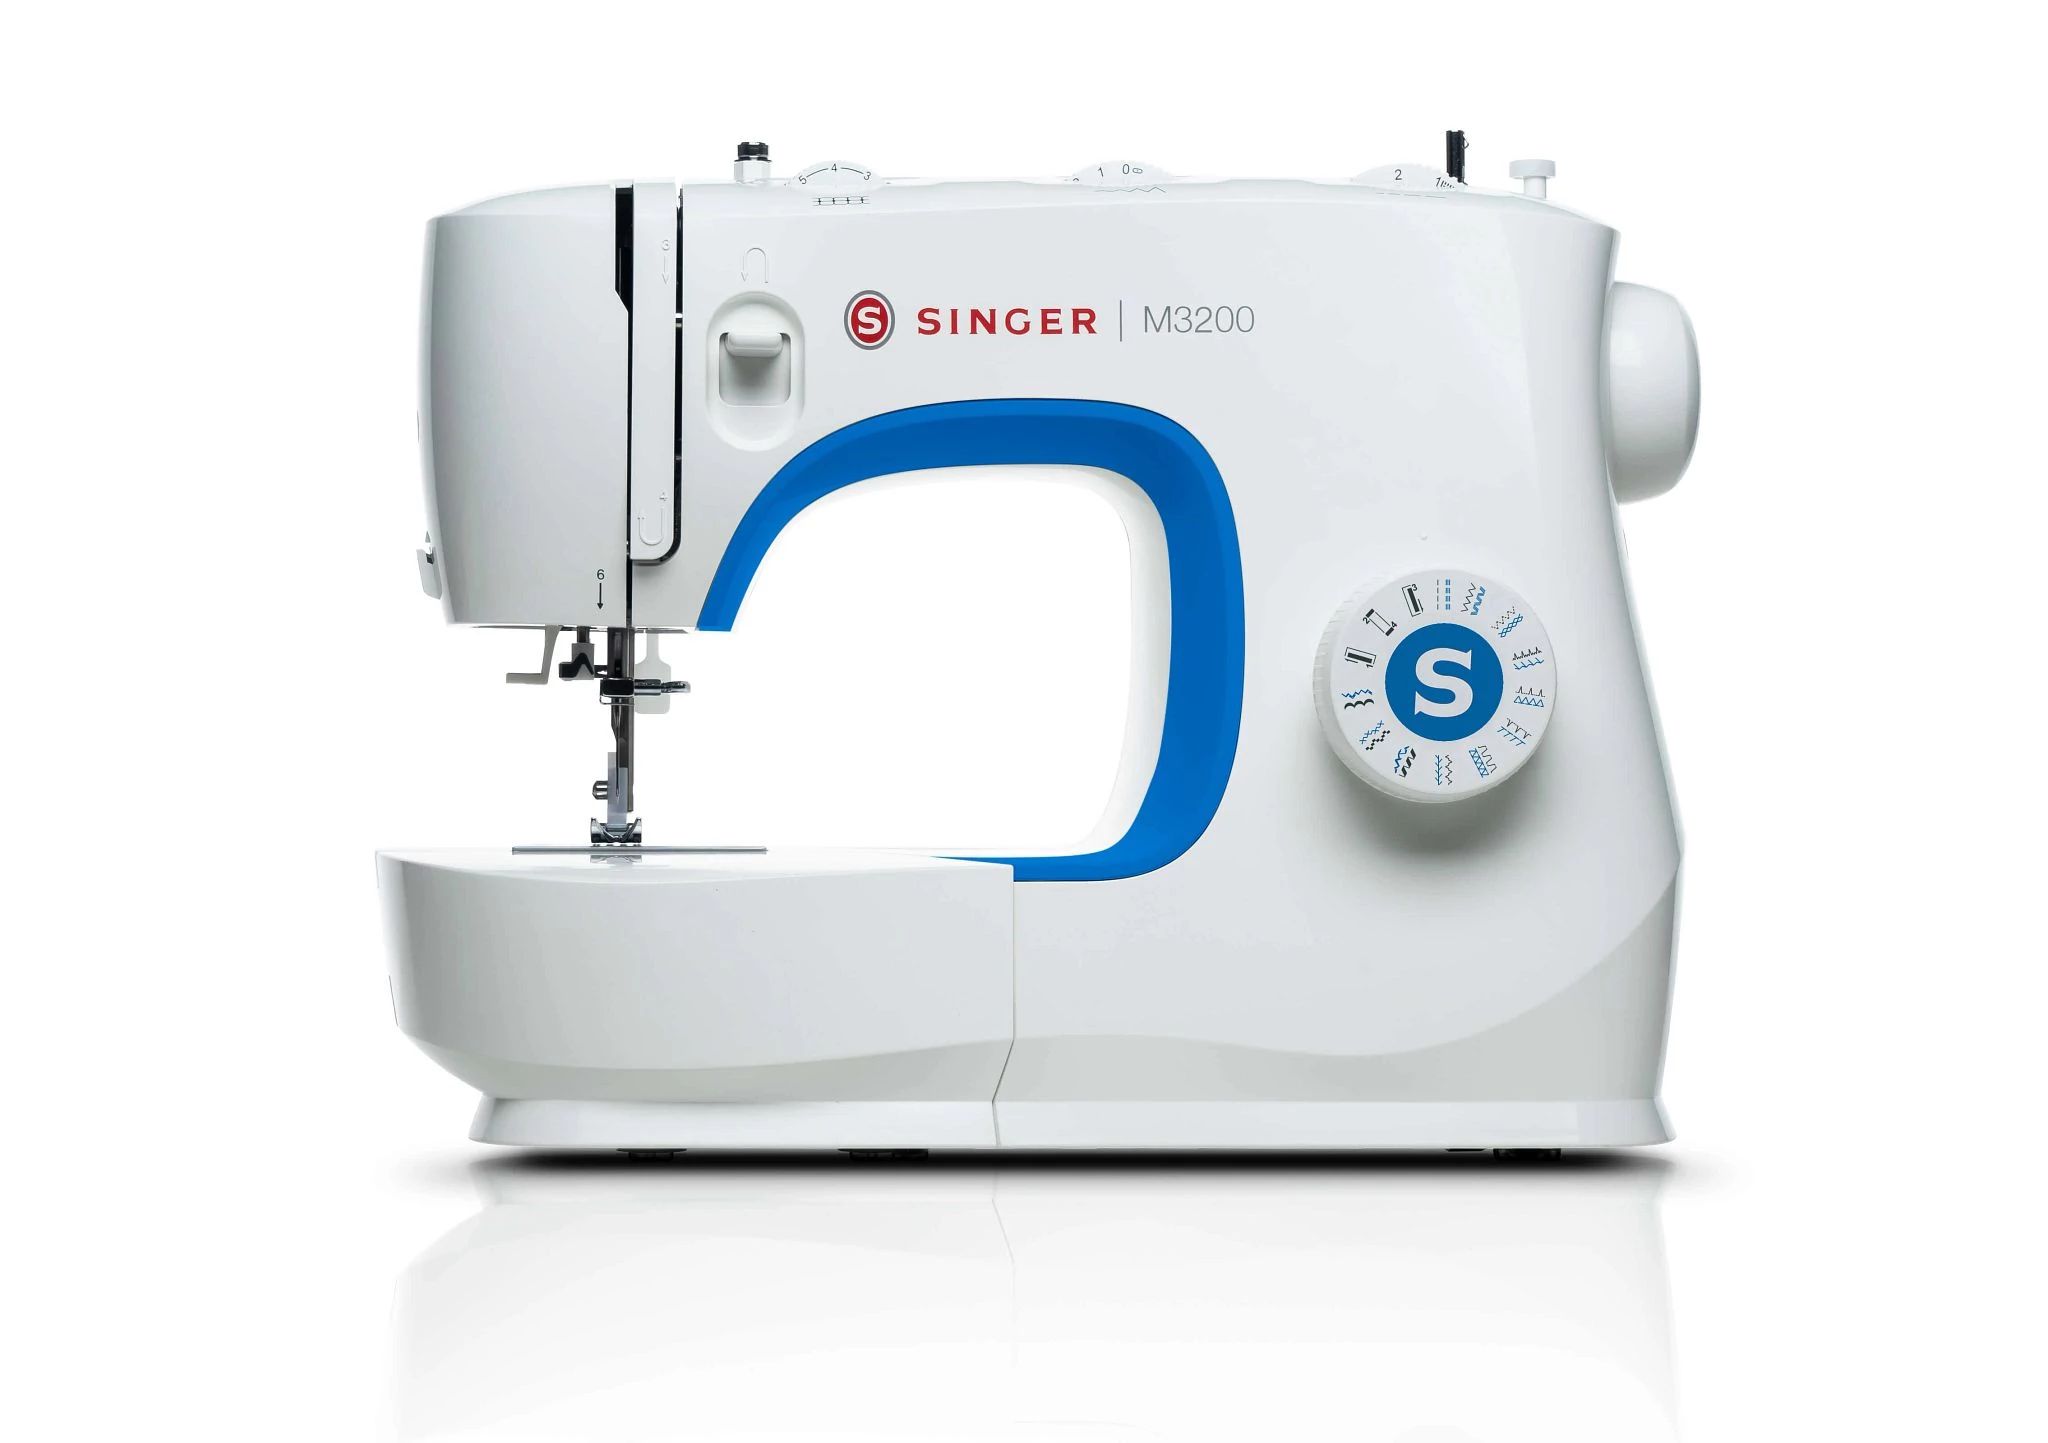 M3200 singer sewing machine